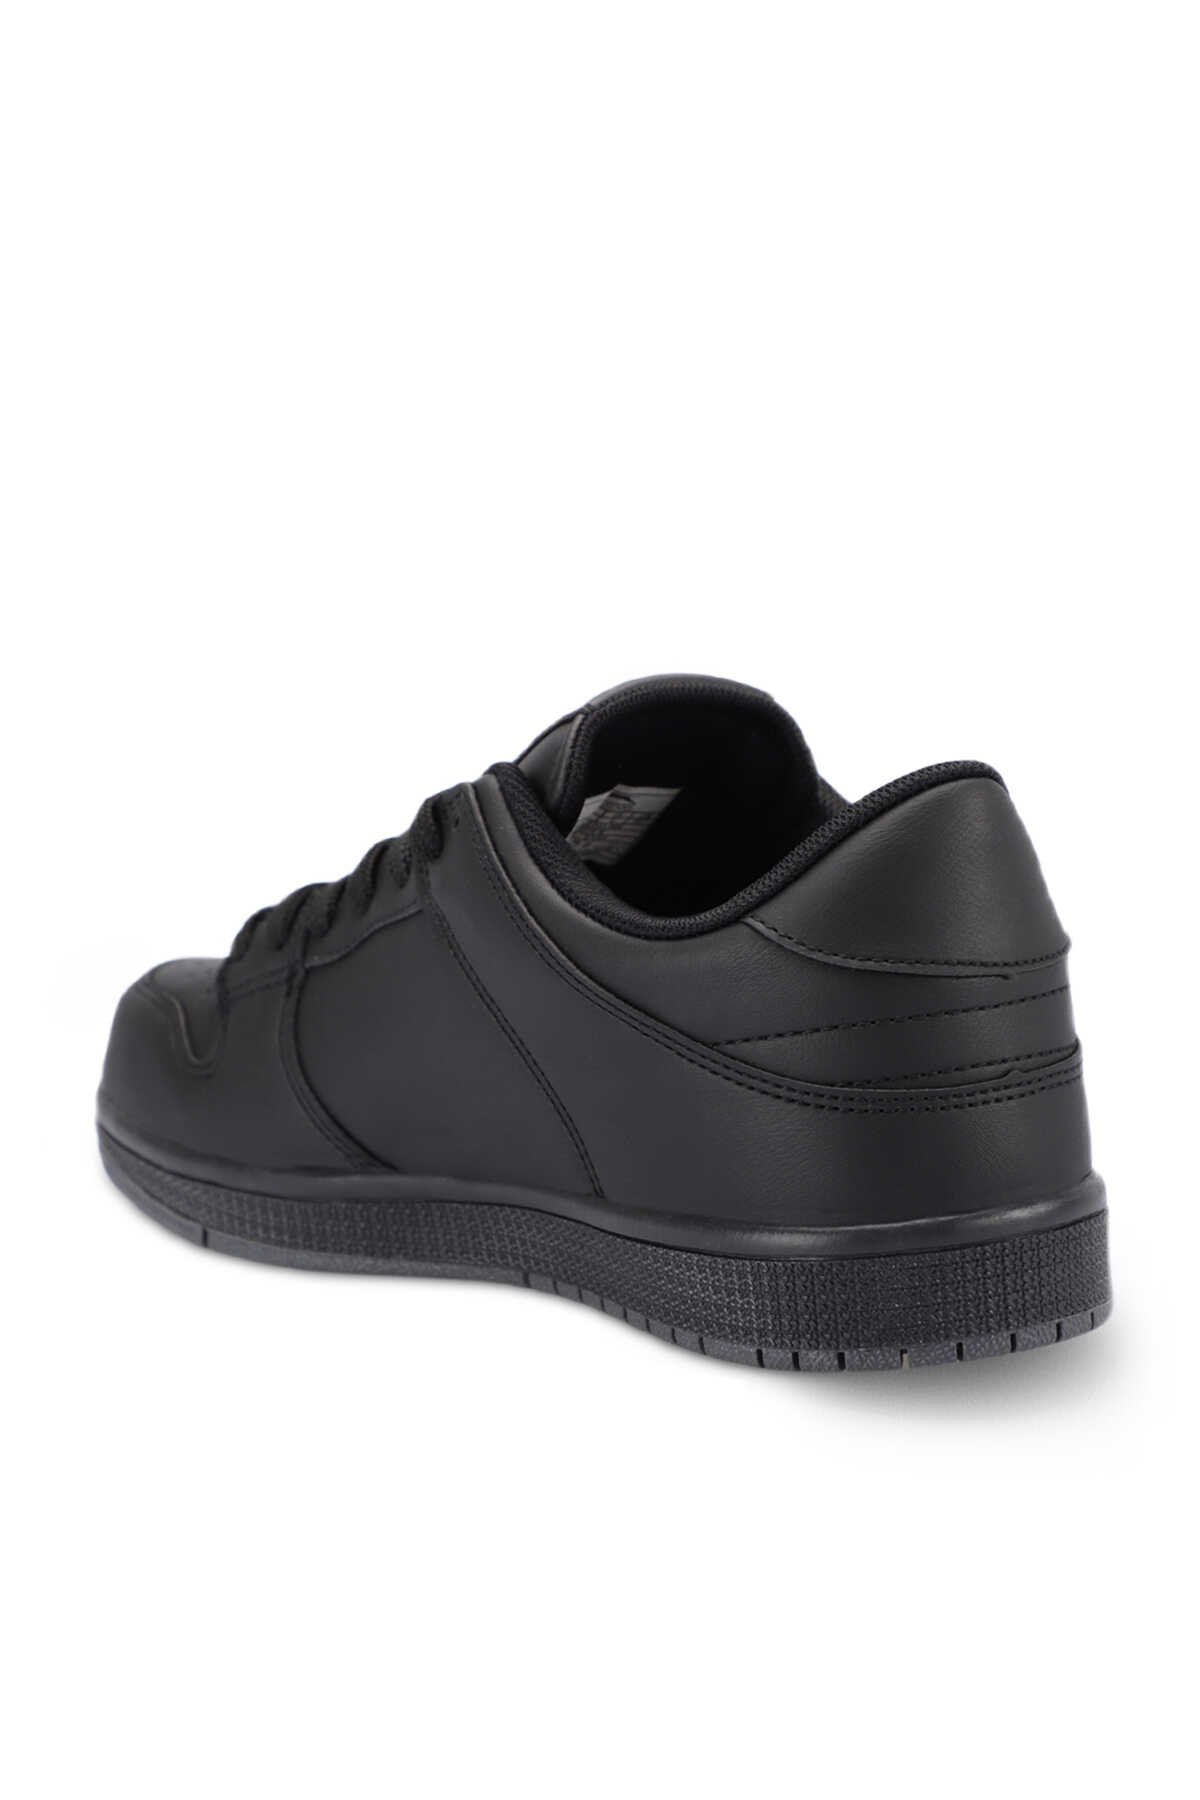 Slazenger LABOR Sneaker Kadın Ayakkabı Siyah / Siyah